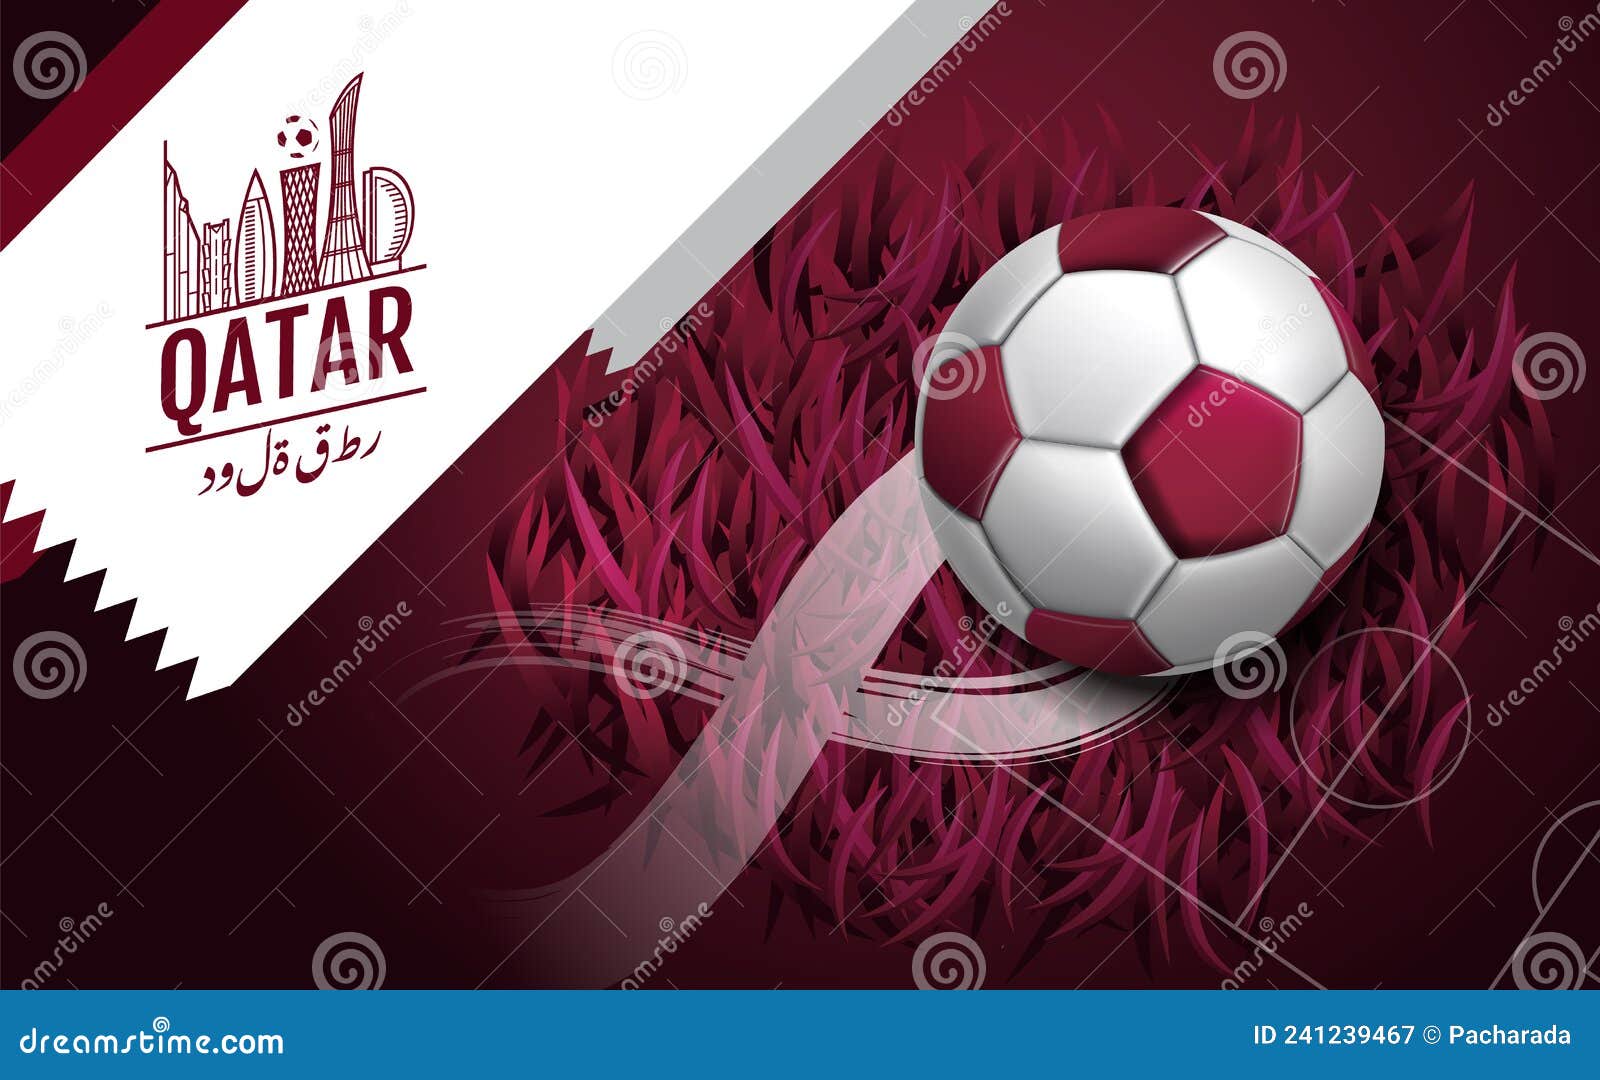 Torneio de futebol 2022 bola de futebol cartaz esportivo fundo